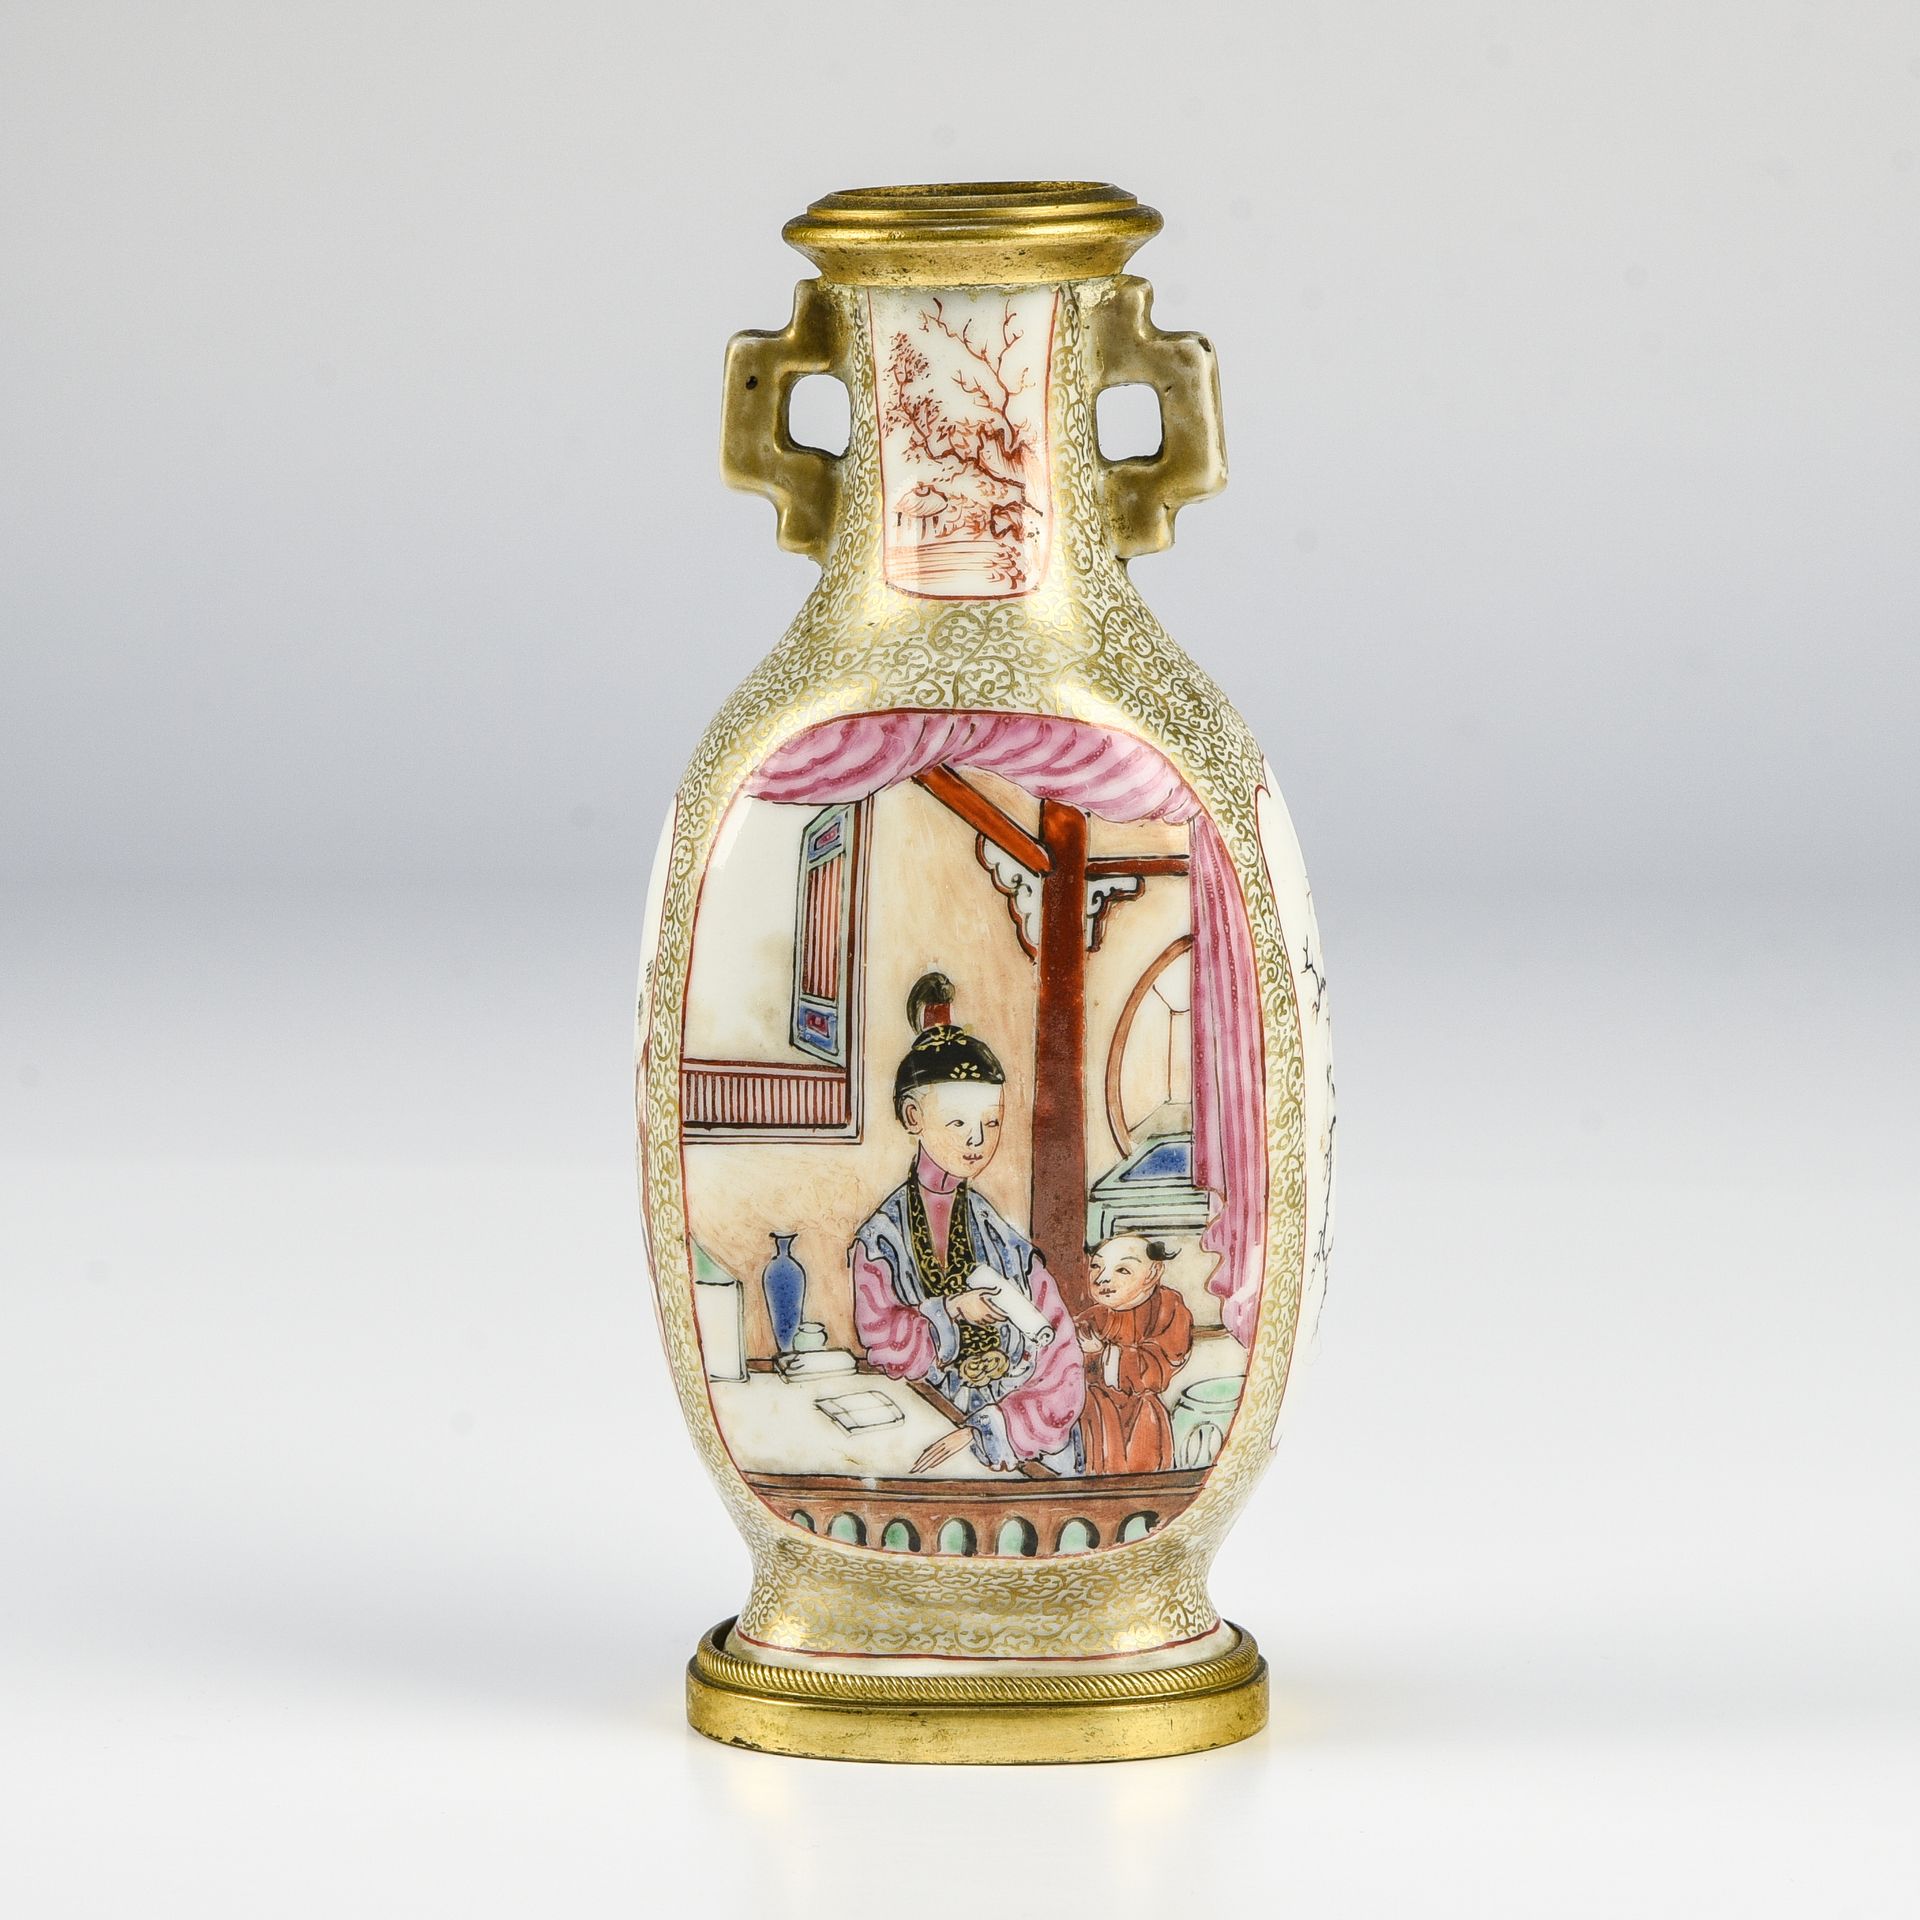 Null 中国，广东 - 乾隆晚期 (1736 - 1795)

小四边柱形花瓶



多彩珐琅彩瓷器，有 "鸳鸯 "装饰，一个年轻女子将卷轴交给仆人，一个年轻&hellip;